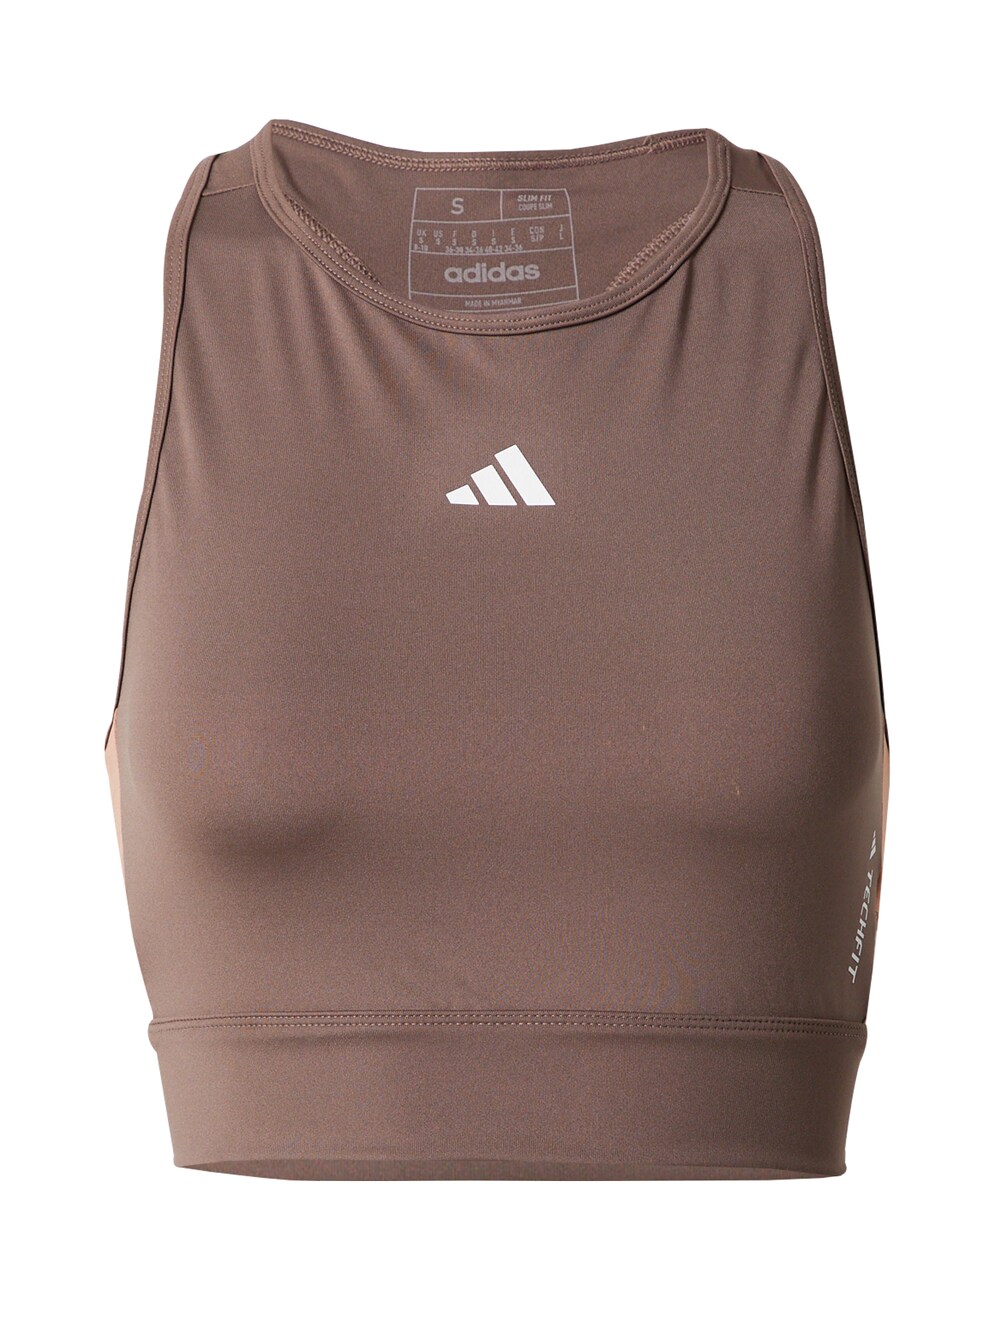 Спортивный топ Adidas Techfit Colorblock, коричневый